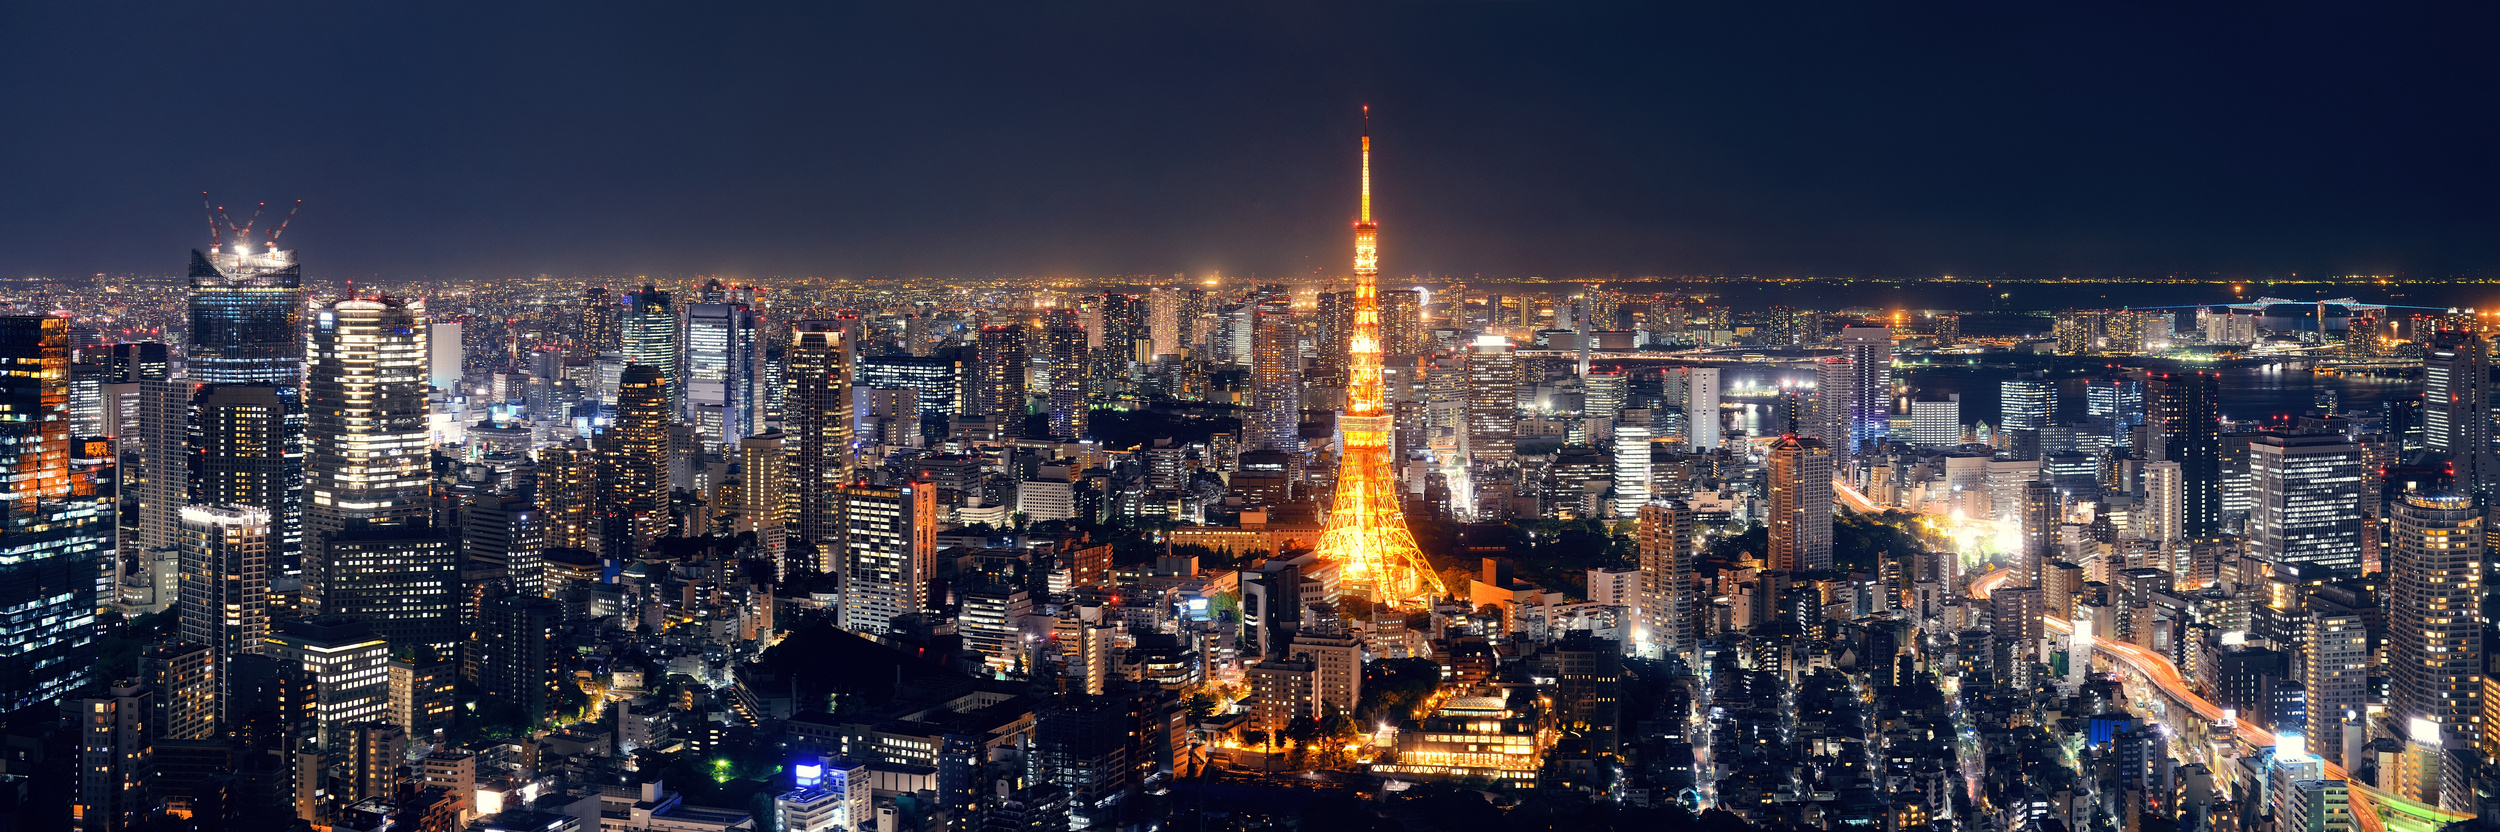 Tokyo et son agglomération se hissent en tête de ce classement, avec pas moins de 37 millions d'habitants. © rabbit75_fot, Adobe Stock